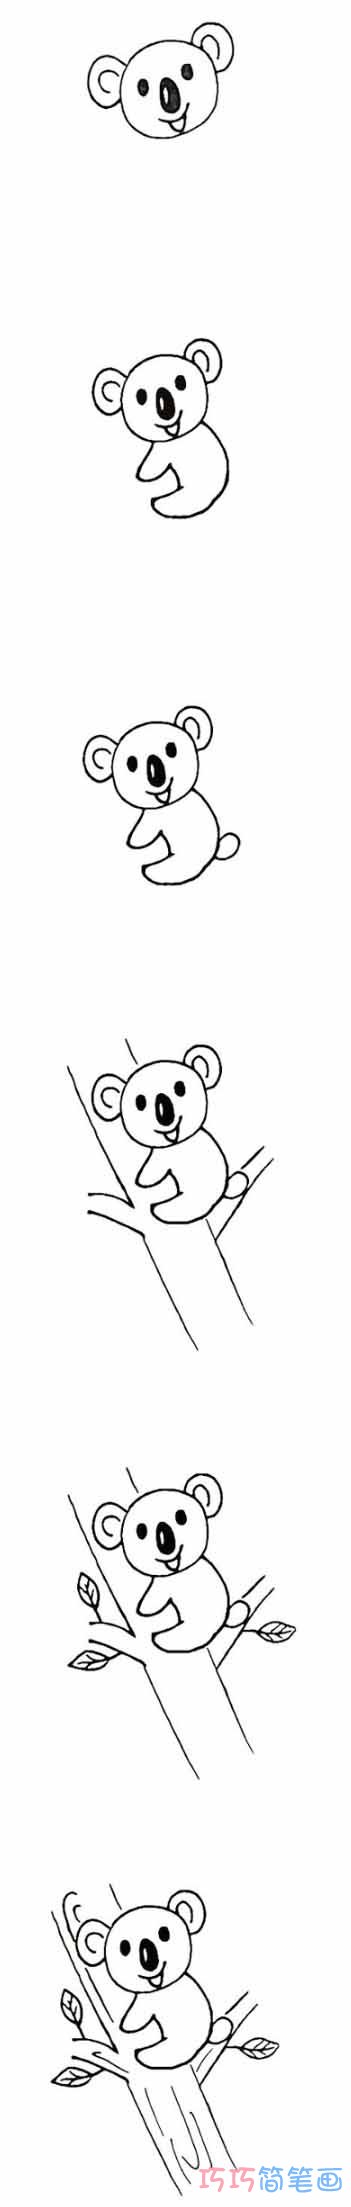 树袋熊怎么画多彩好看_带步骤图树袋熊简笔画图片